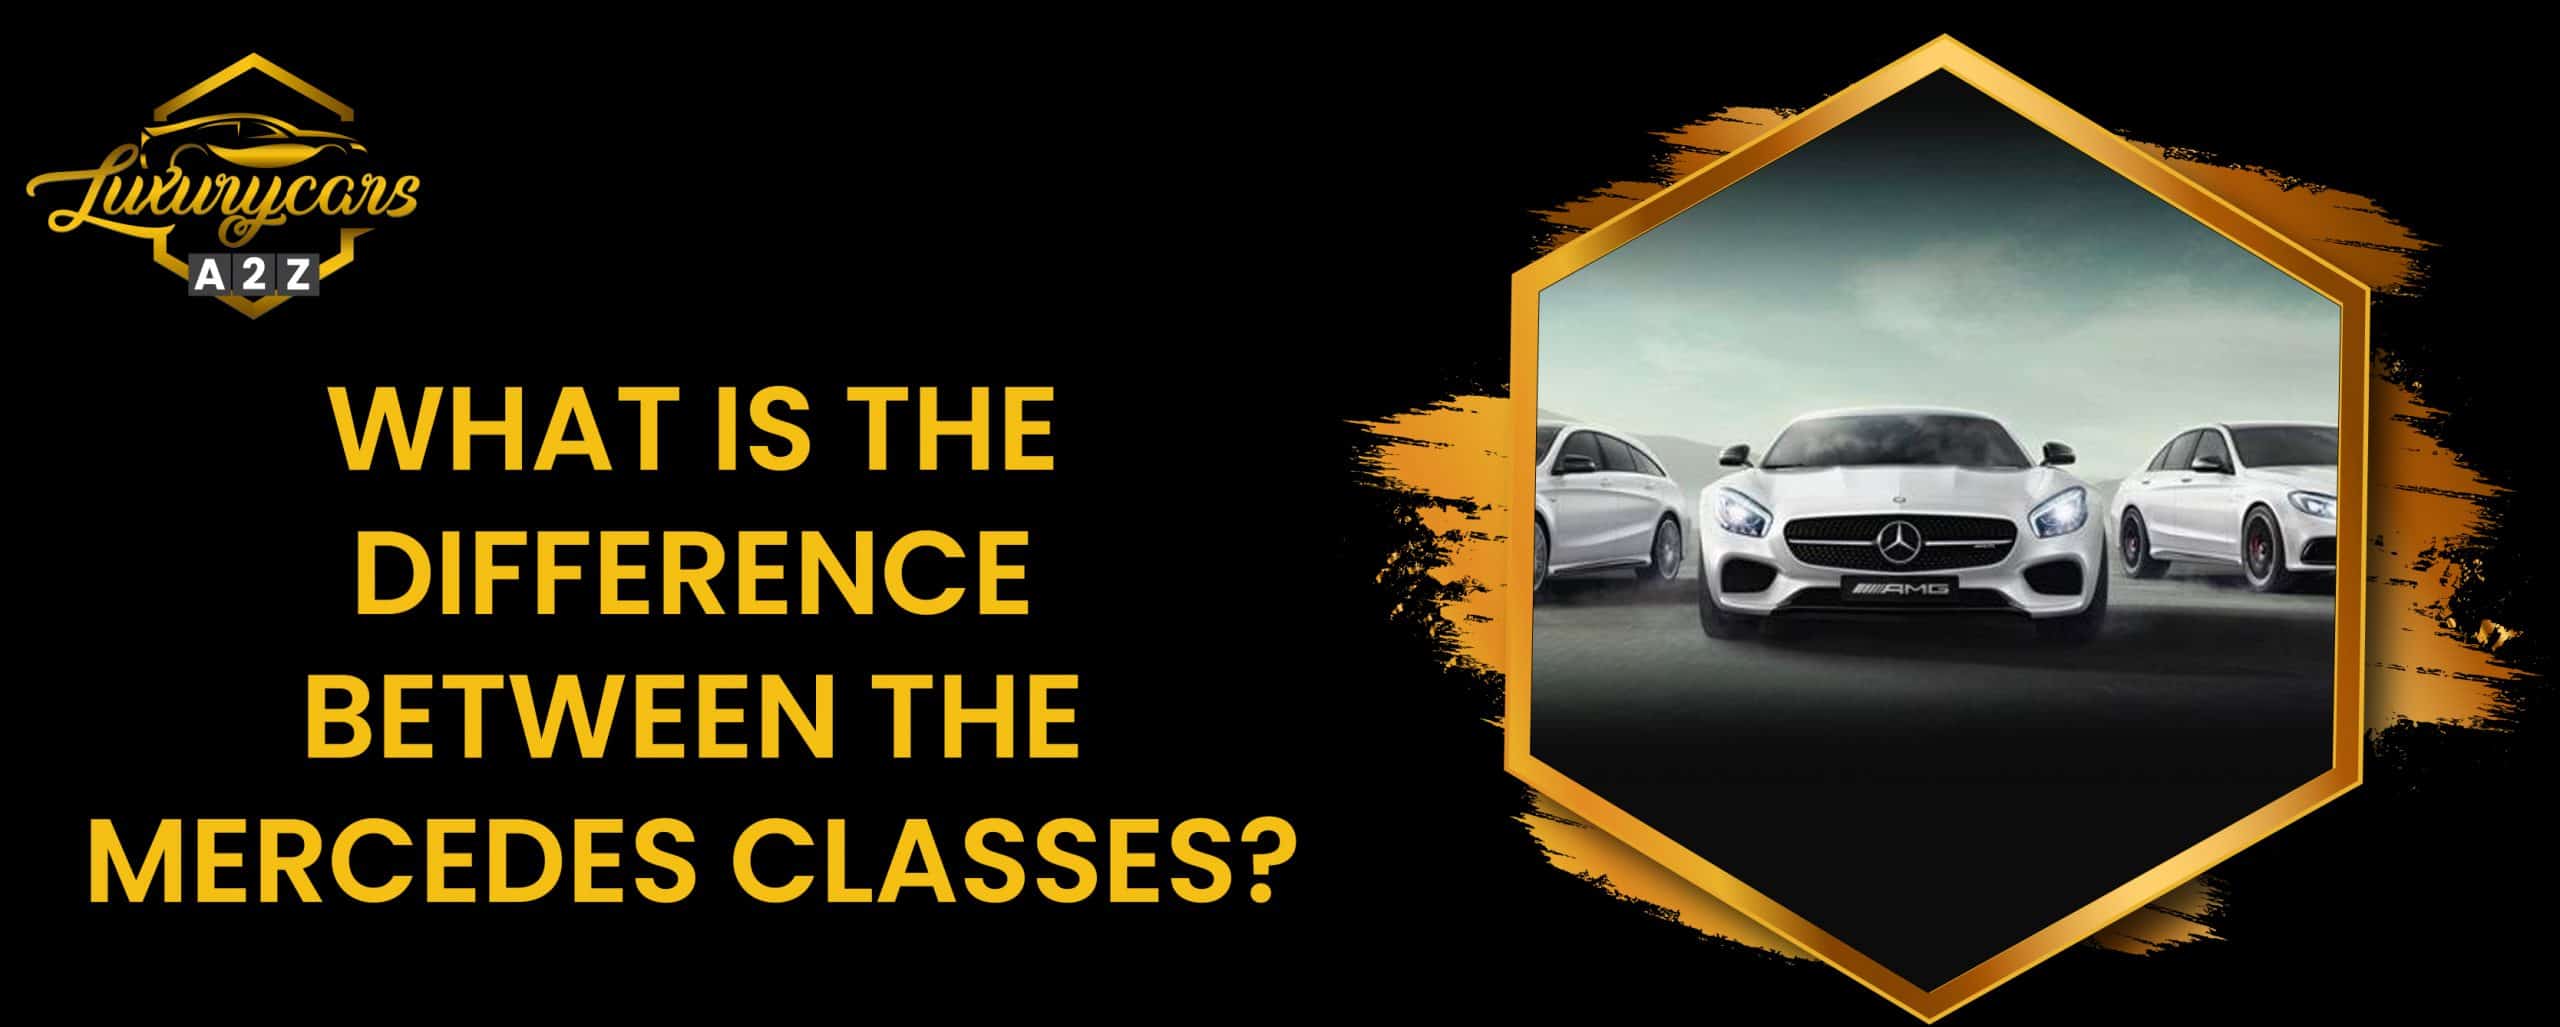 Quelle est la différence entre les classes Mercedes ?